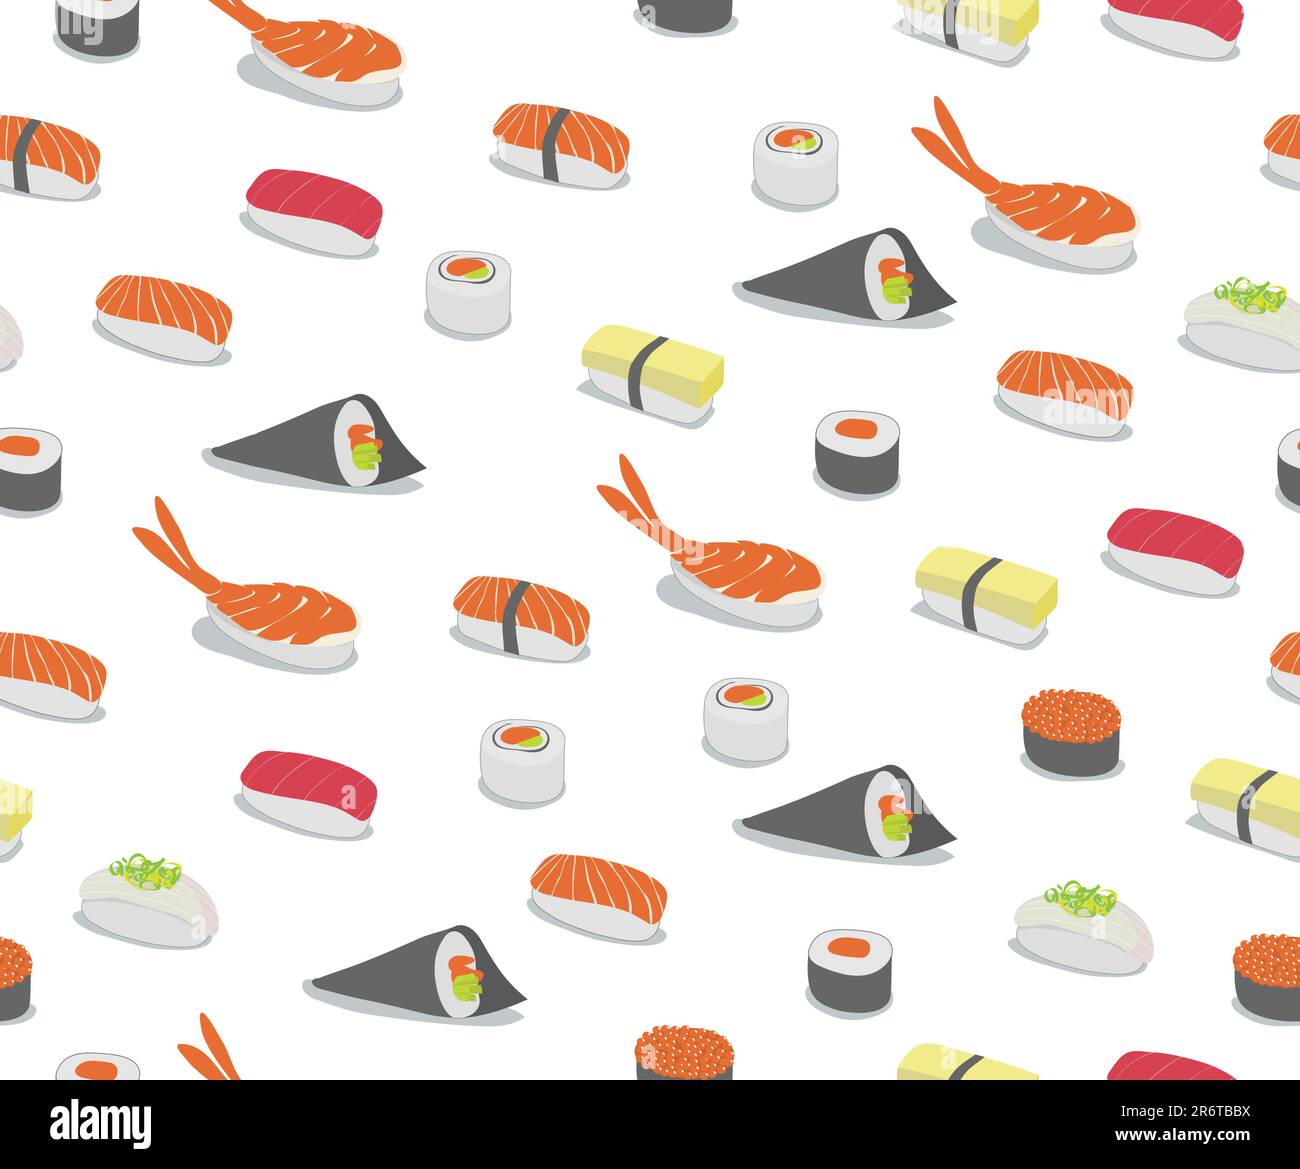 Vektor-Hintergrund-Illustration von verschiedenen Arten von Sushi im kultigen Stil. Retro-Seamless Pattern. Stock Vektor